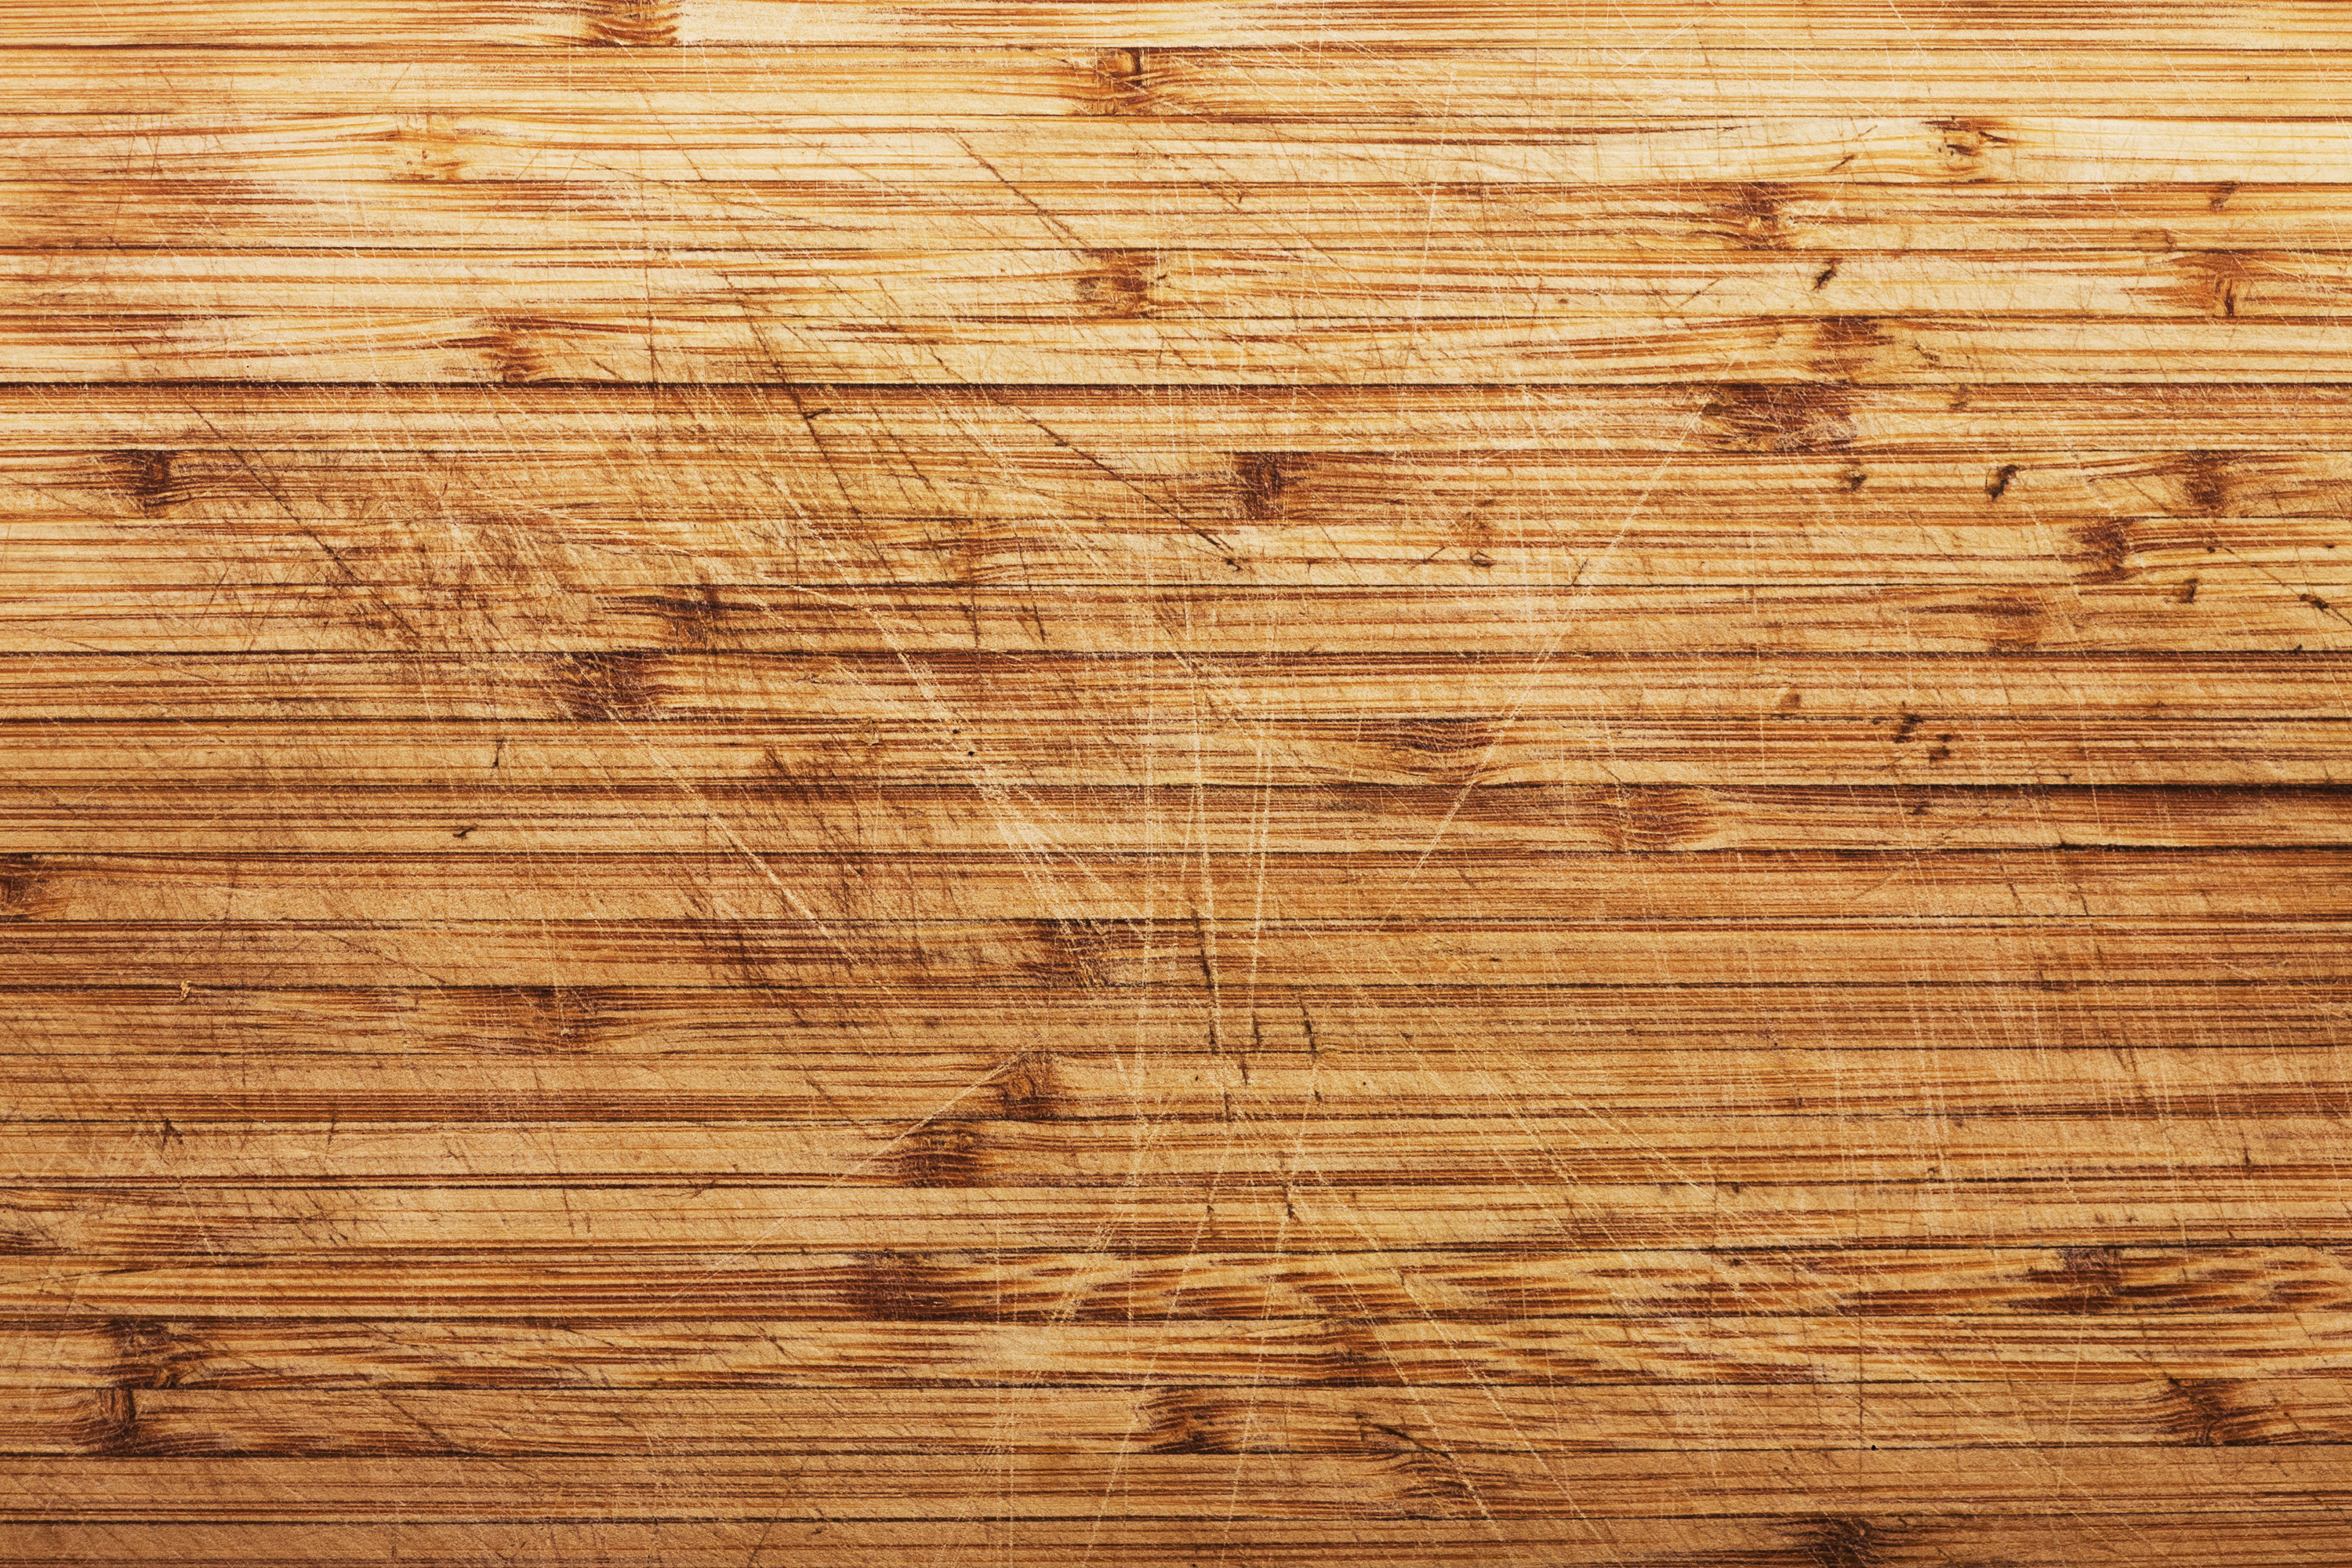 木板壁紙,木材,ウッドステイン,ウッドフローリング,板,広葉樹